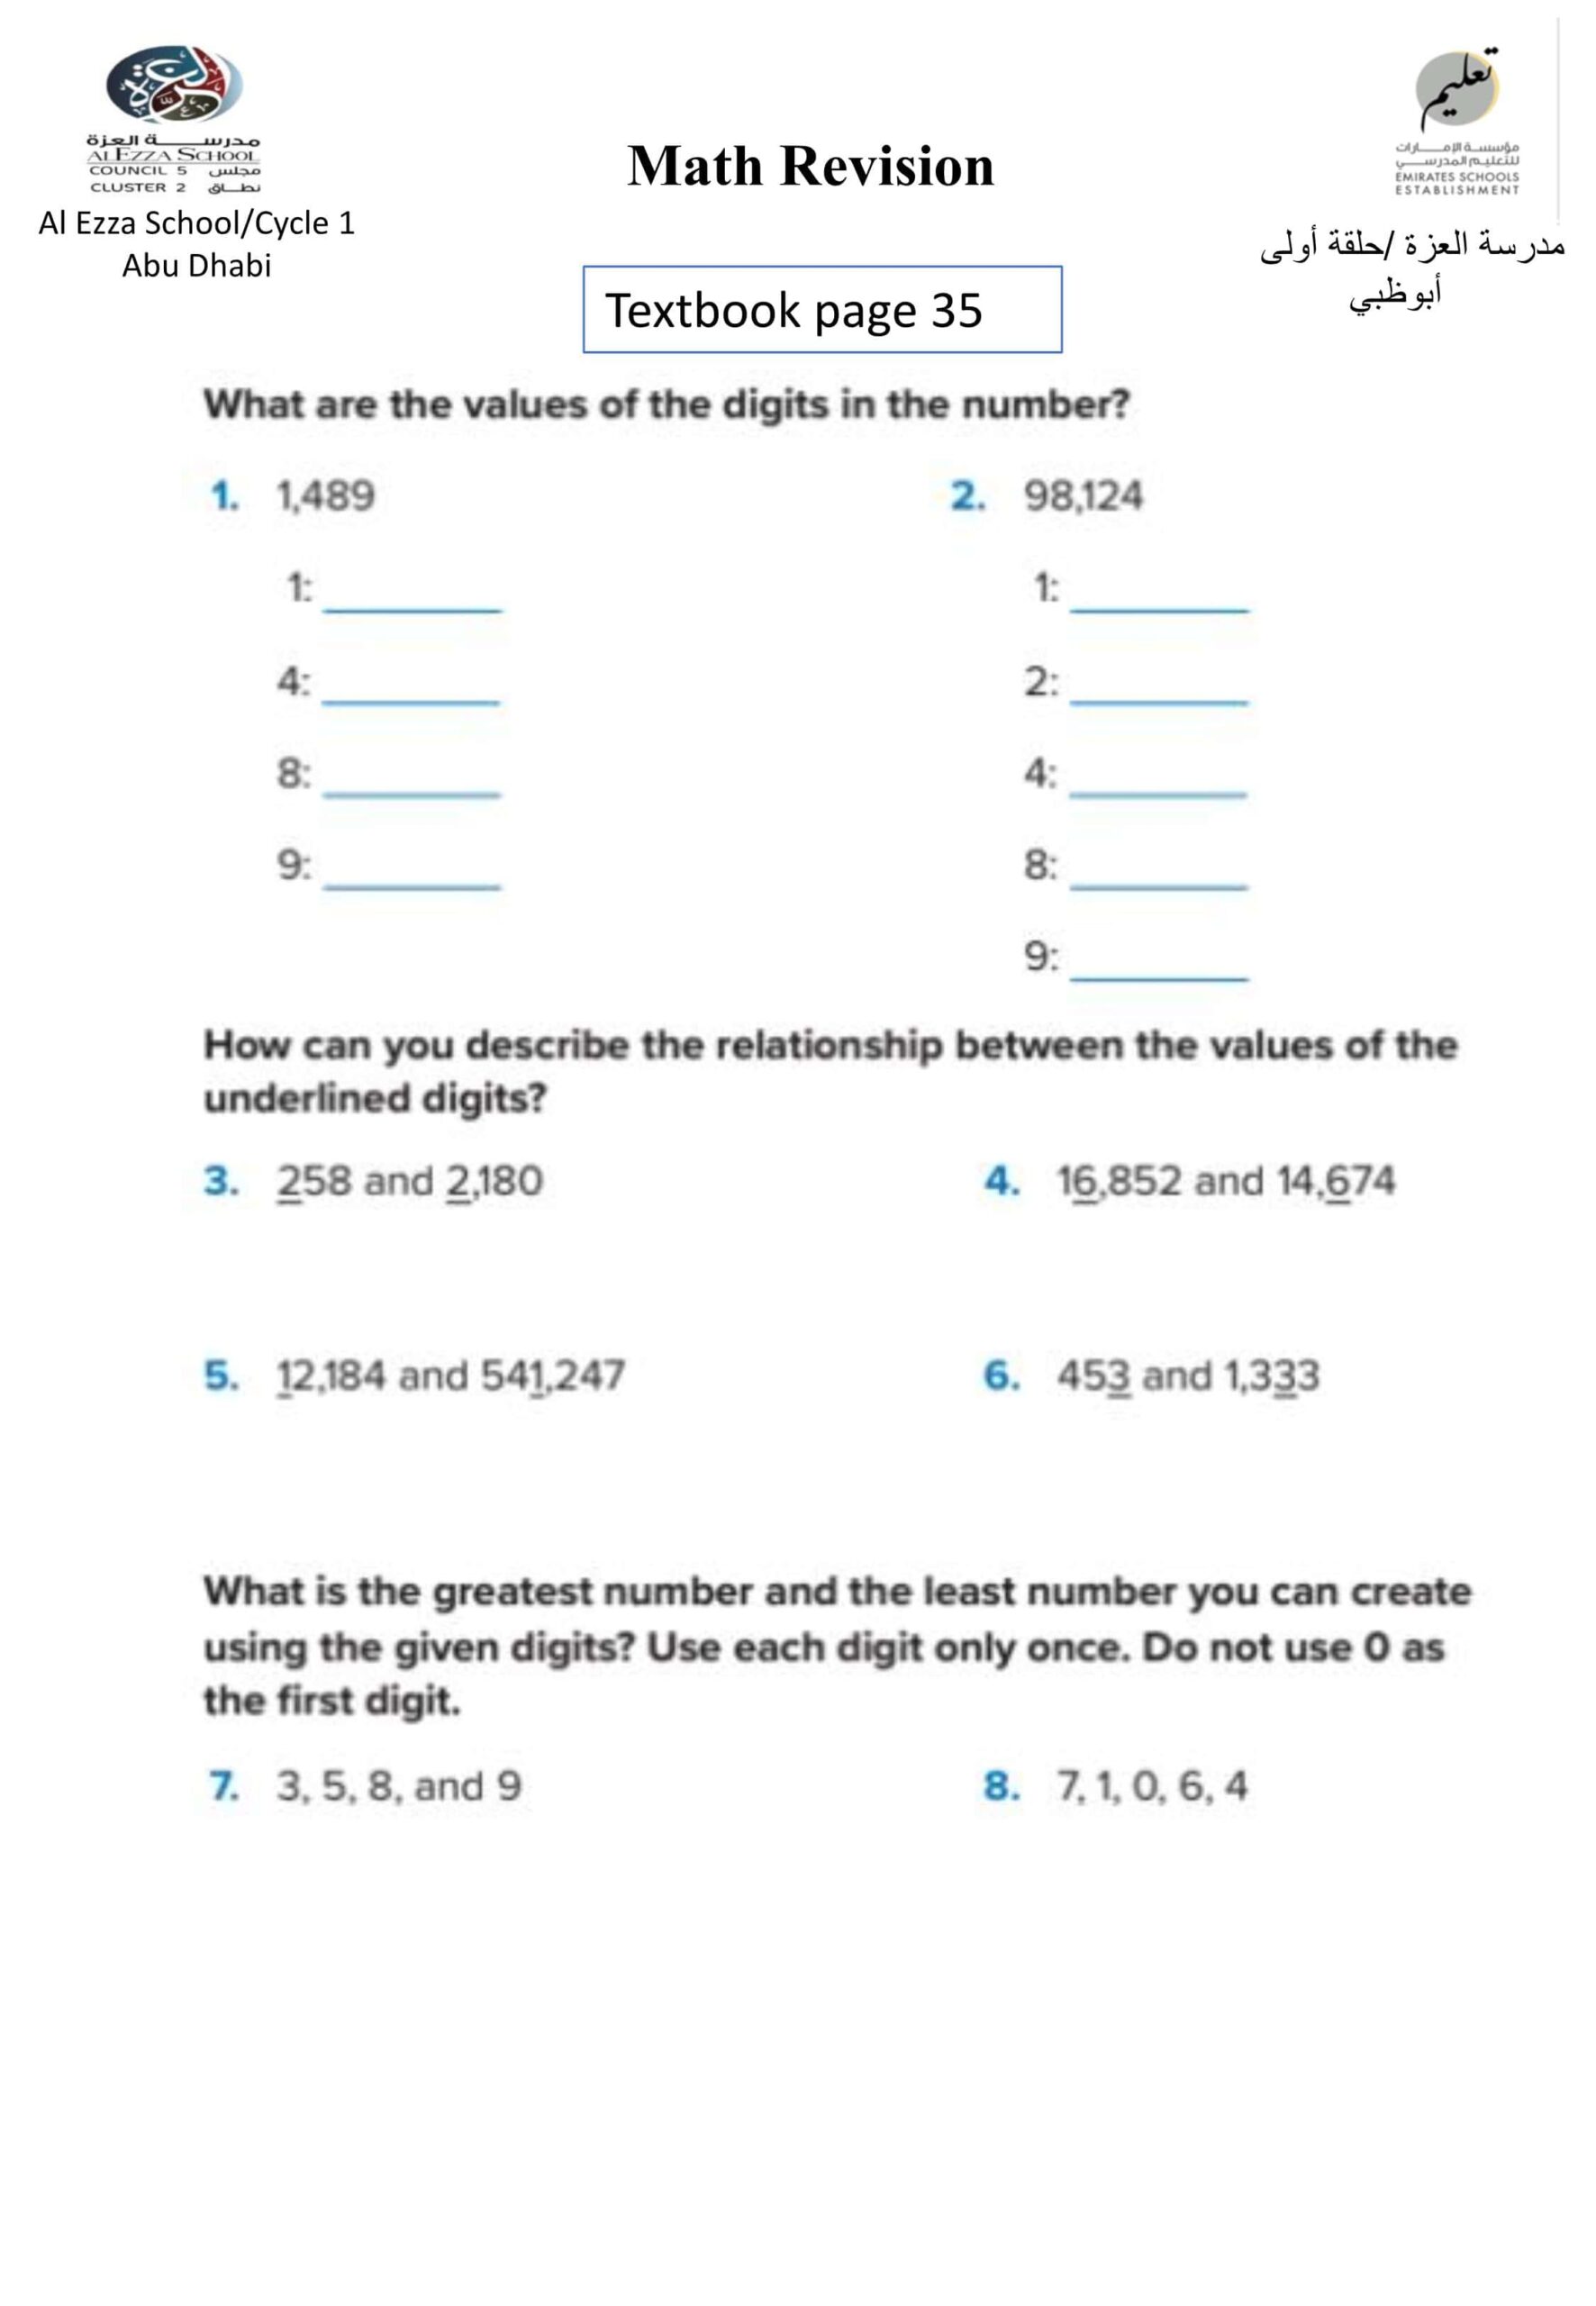 أسئلة مراجعة للامتحان النهائي الرياضيات المتكاملة الصف الرابع Reveal